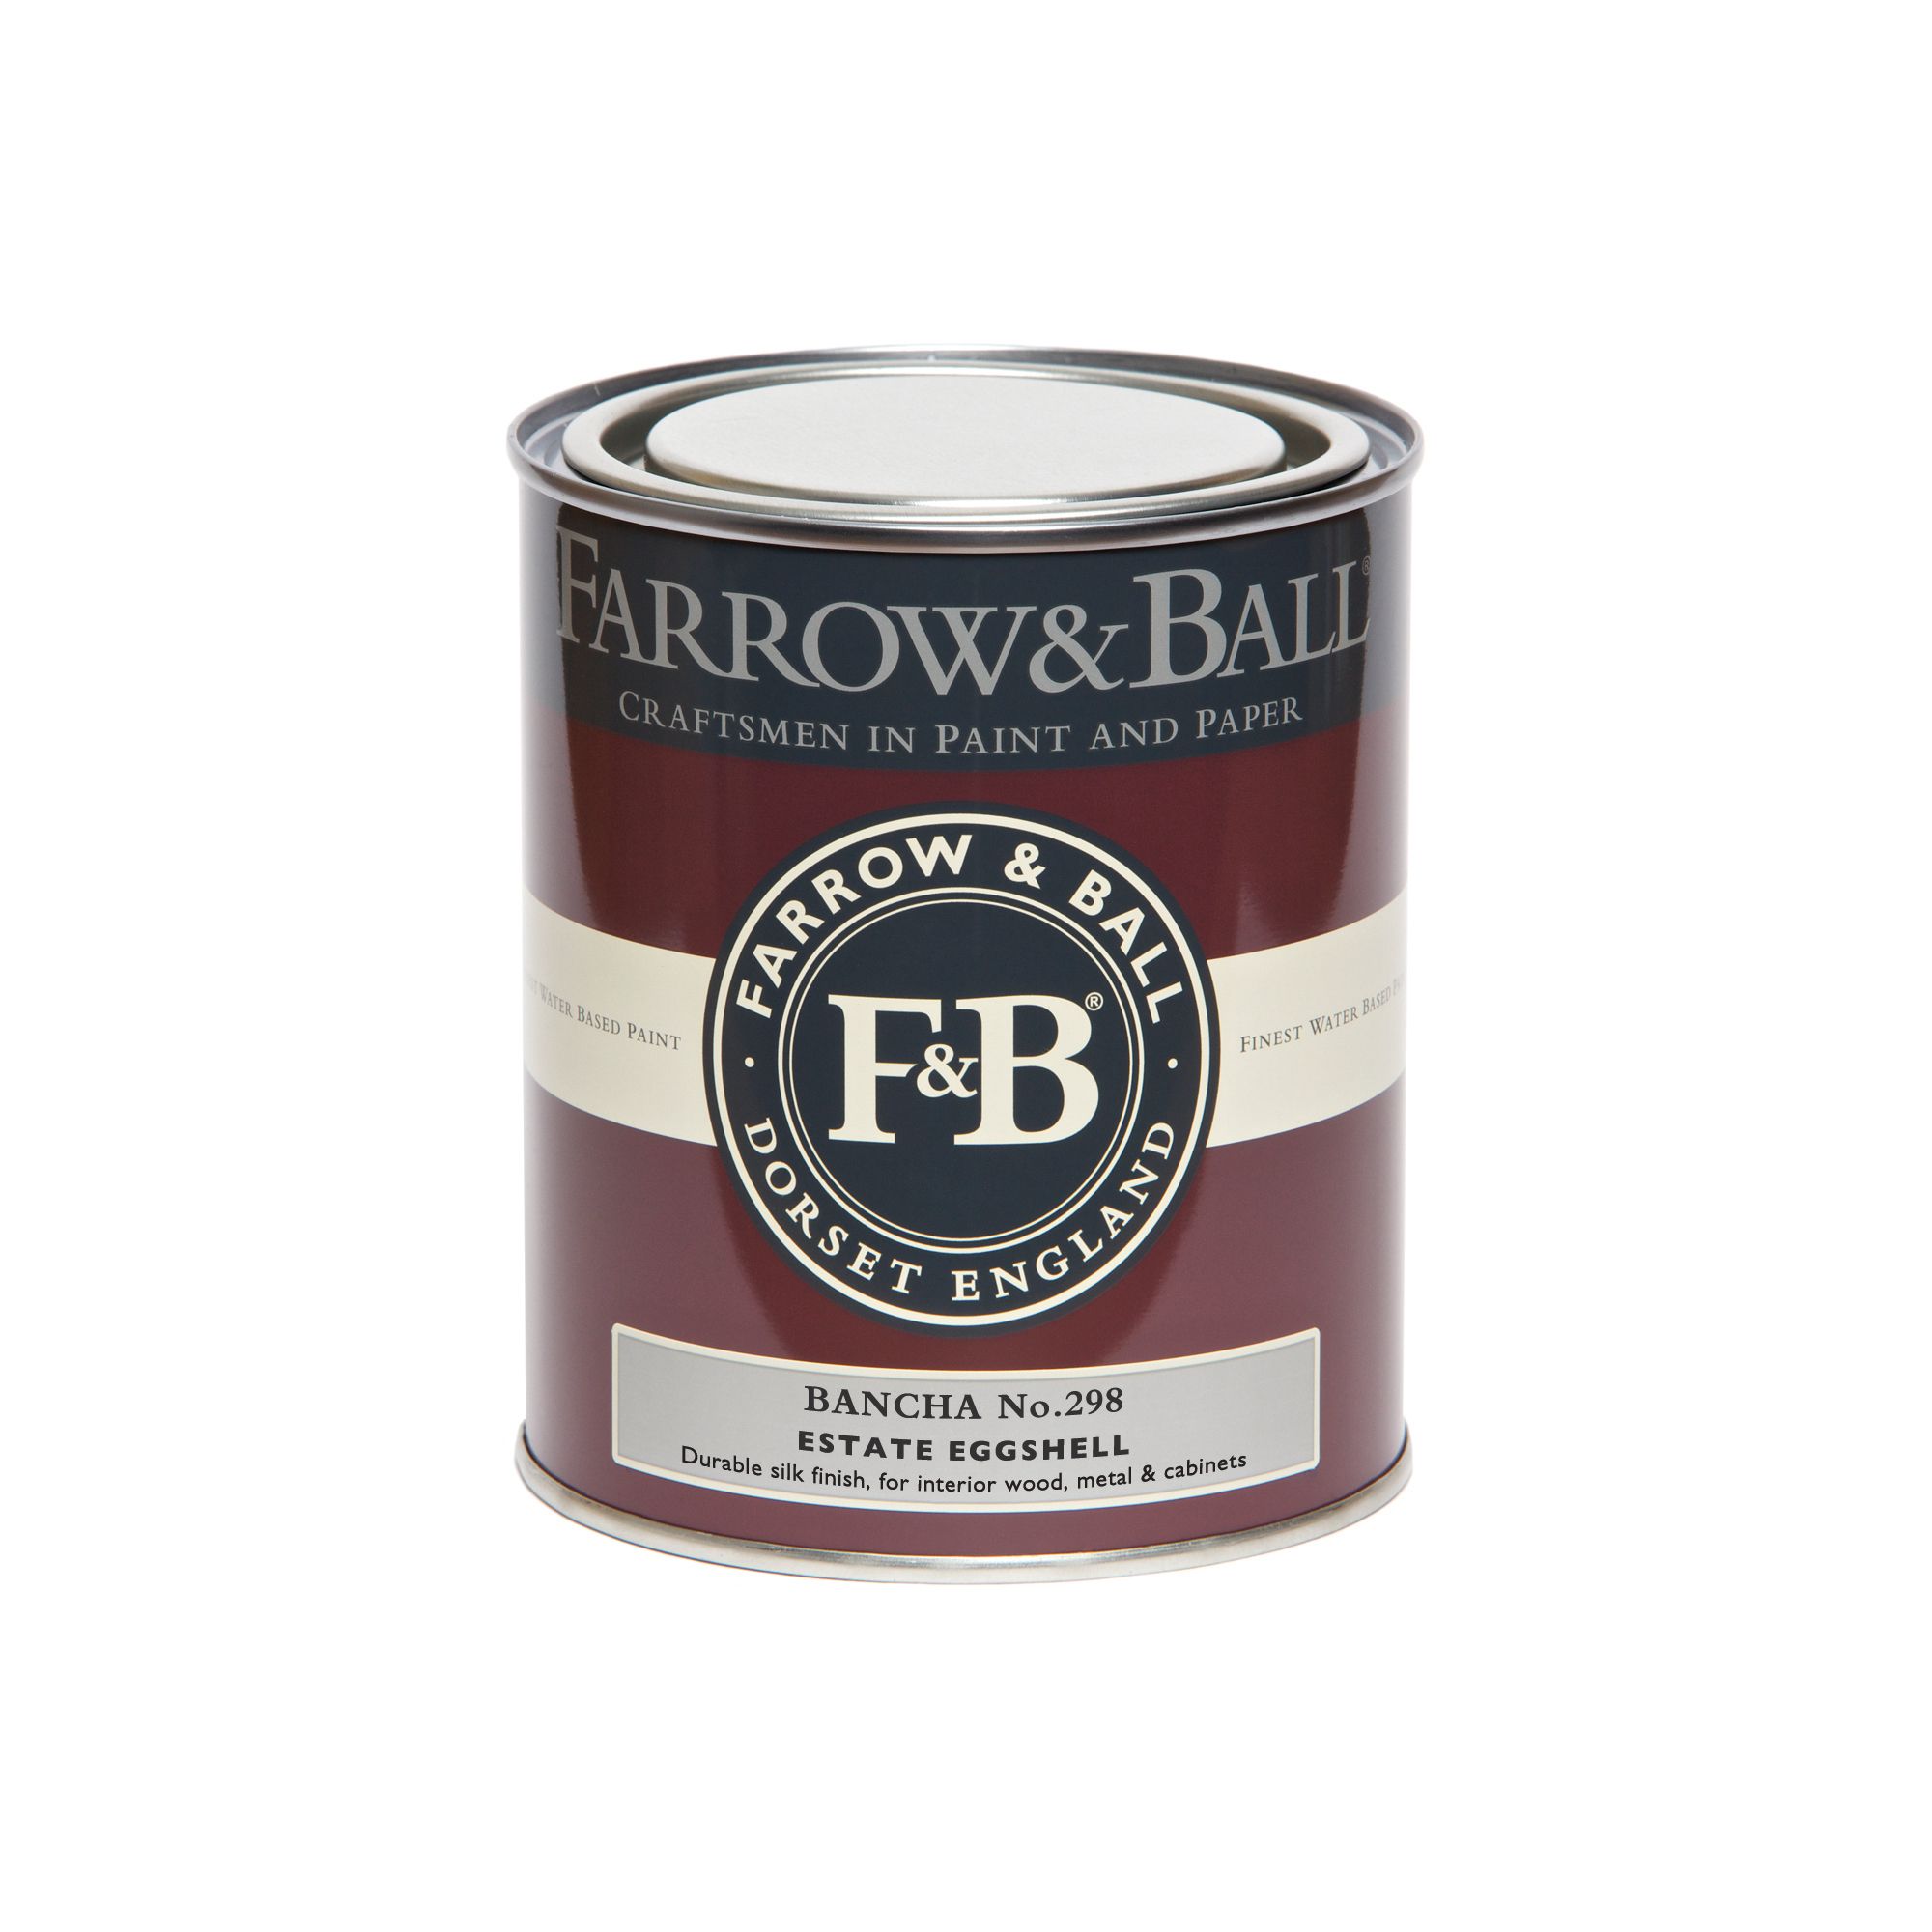 Farrow & Ball Estate Bancha No.298 Eggshell Metal & wood paint, 750ml